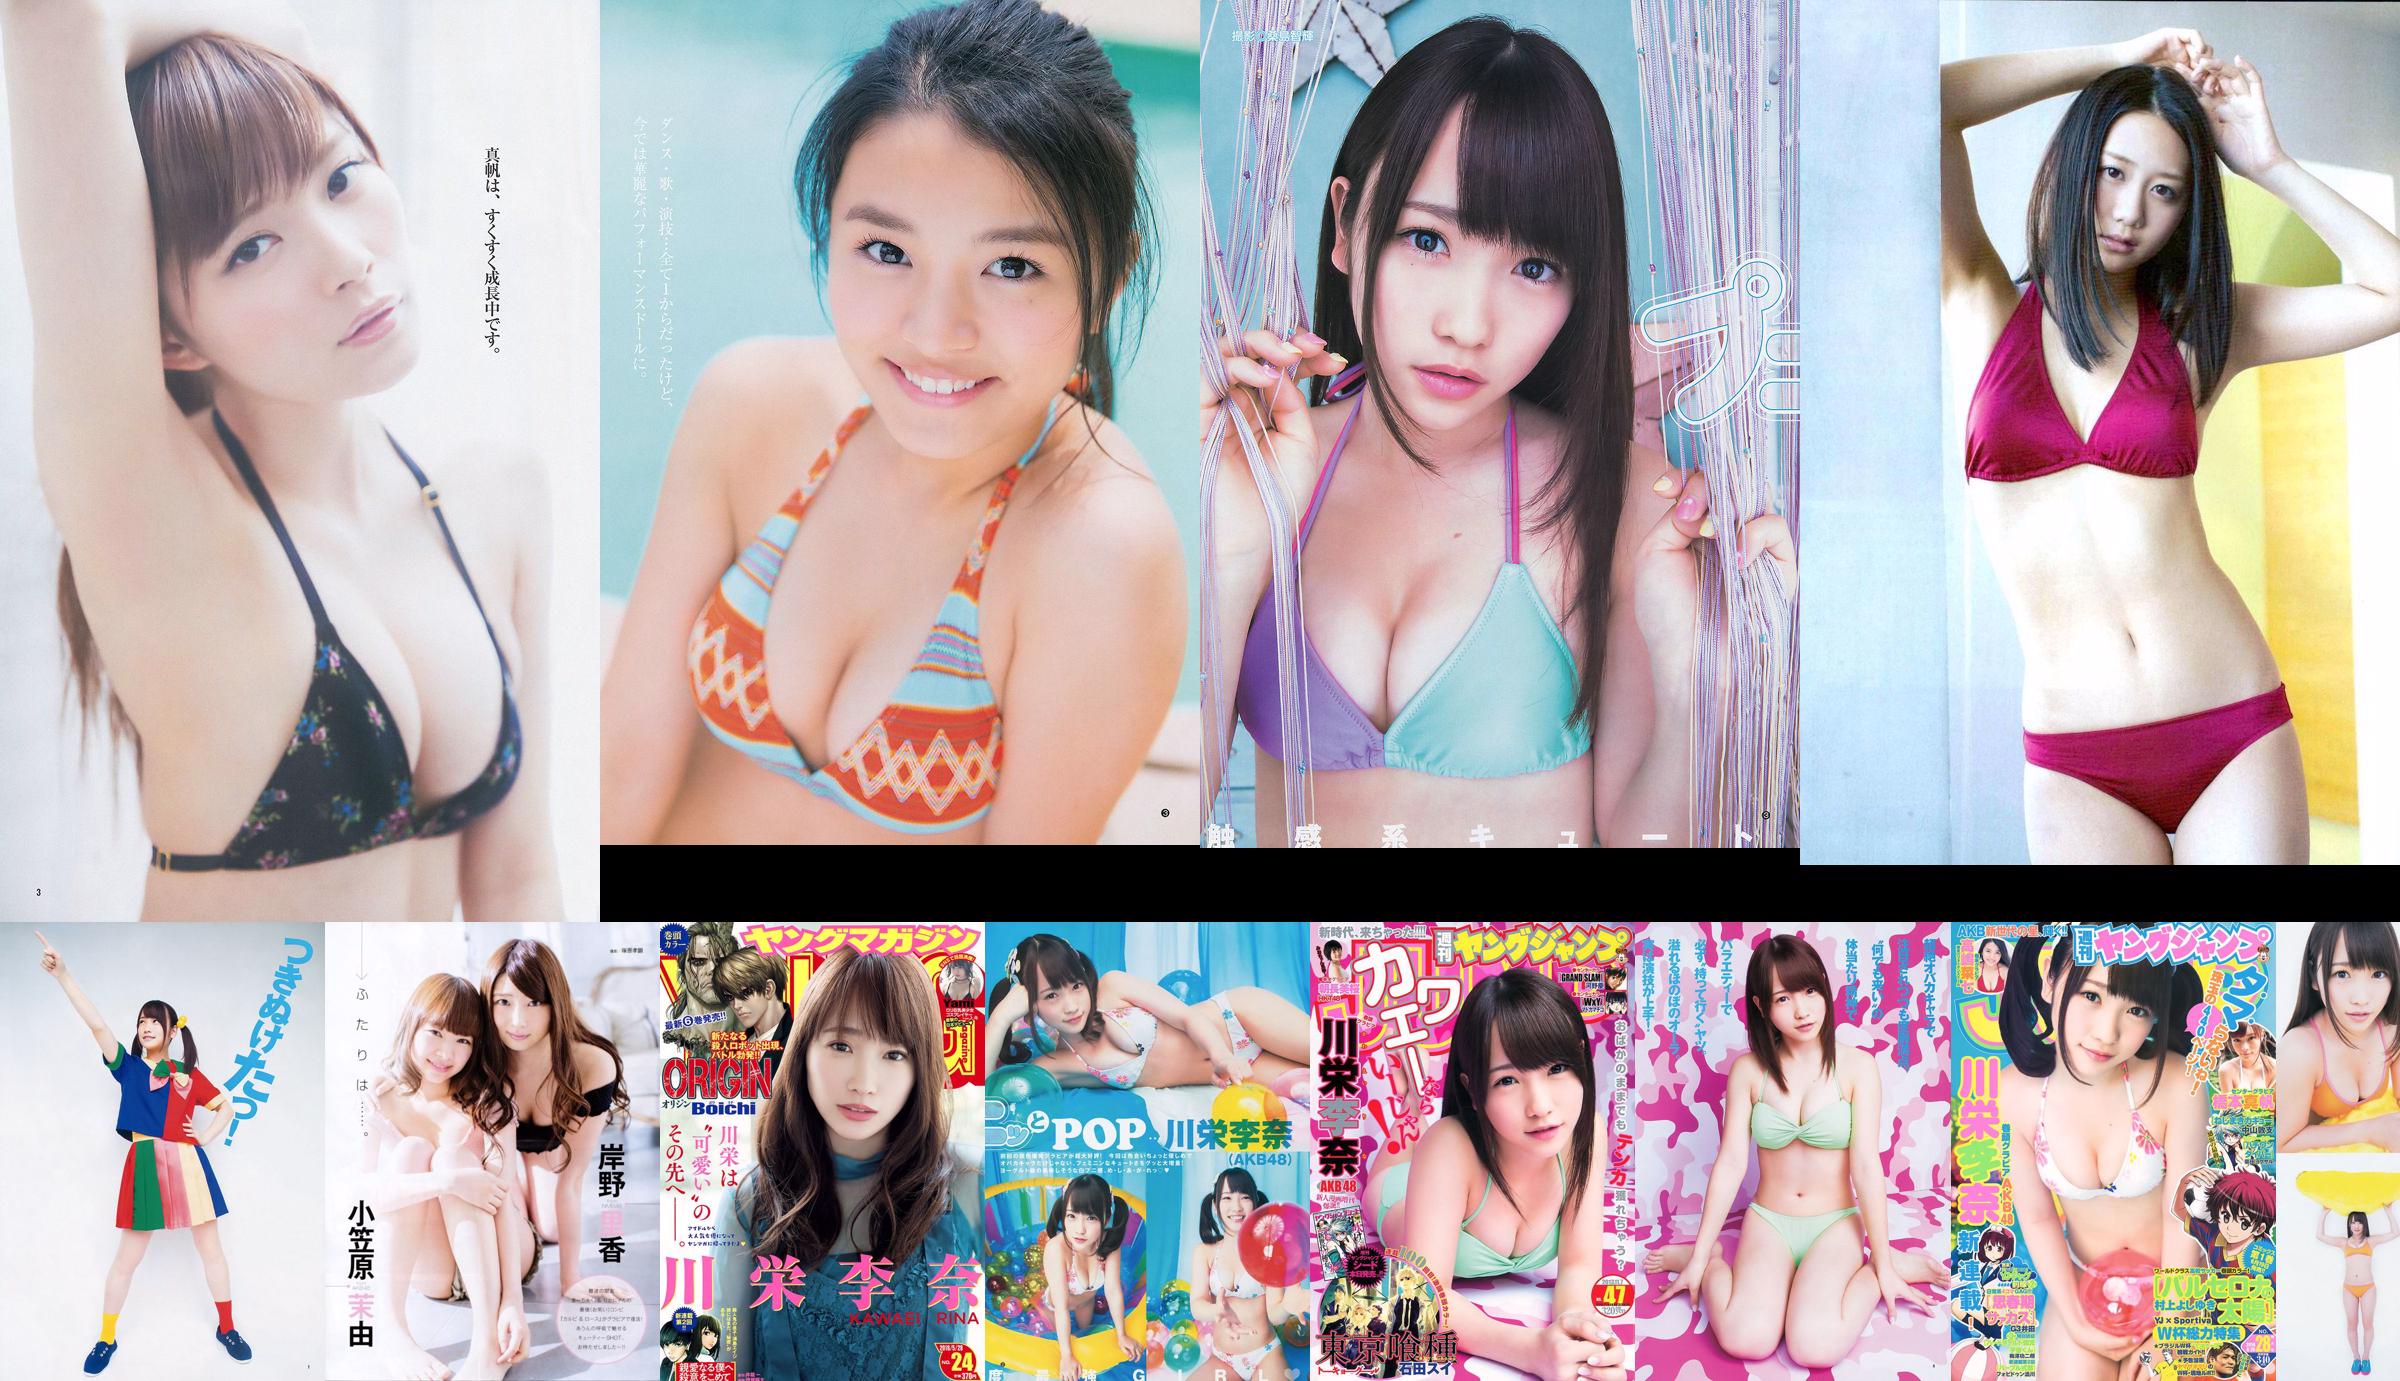 [ENTAME] Kawaei Rina Furuhata Naka e Kishino Rika junho de 2014 Photo Magazine No.650d6d Página 6